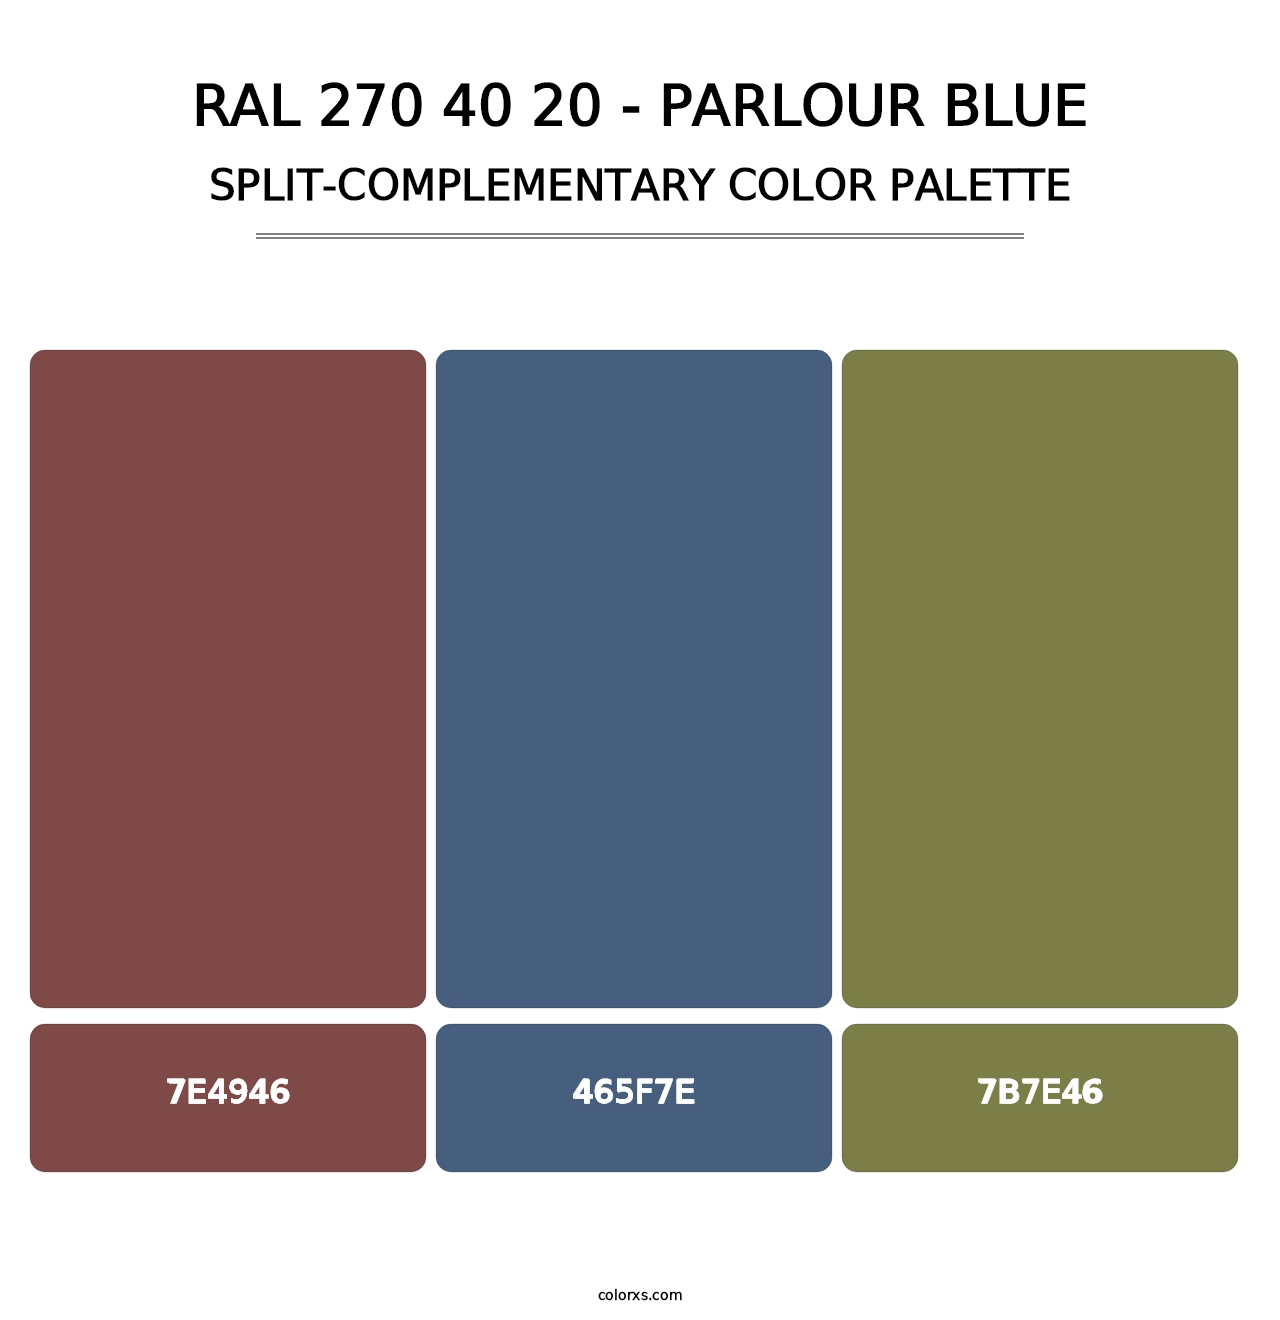 RAL 270 40 20 - Parlour Blue - Split-Complementary Color Palette